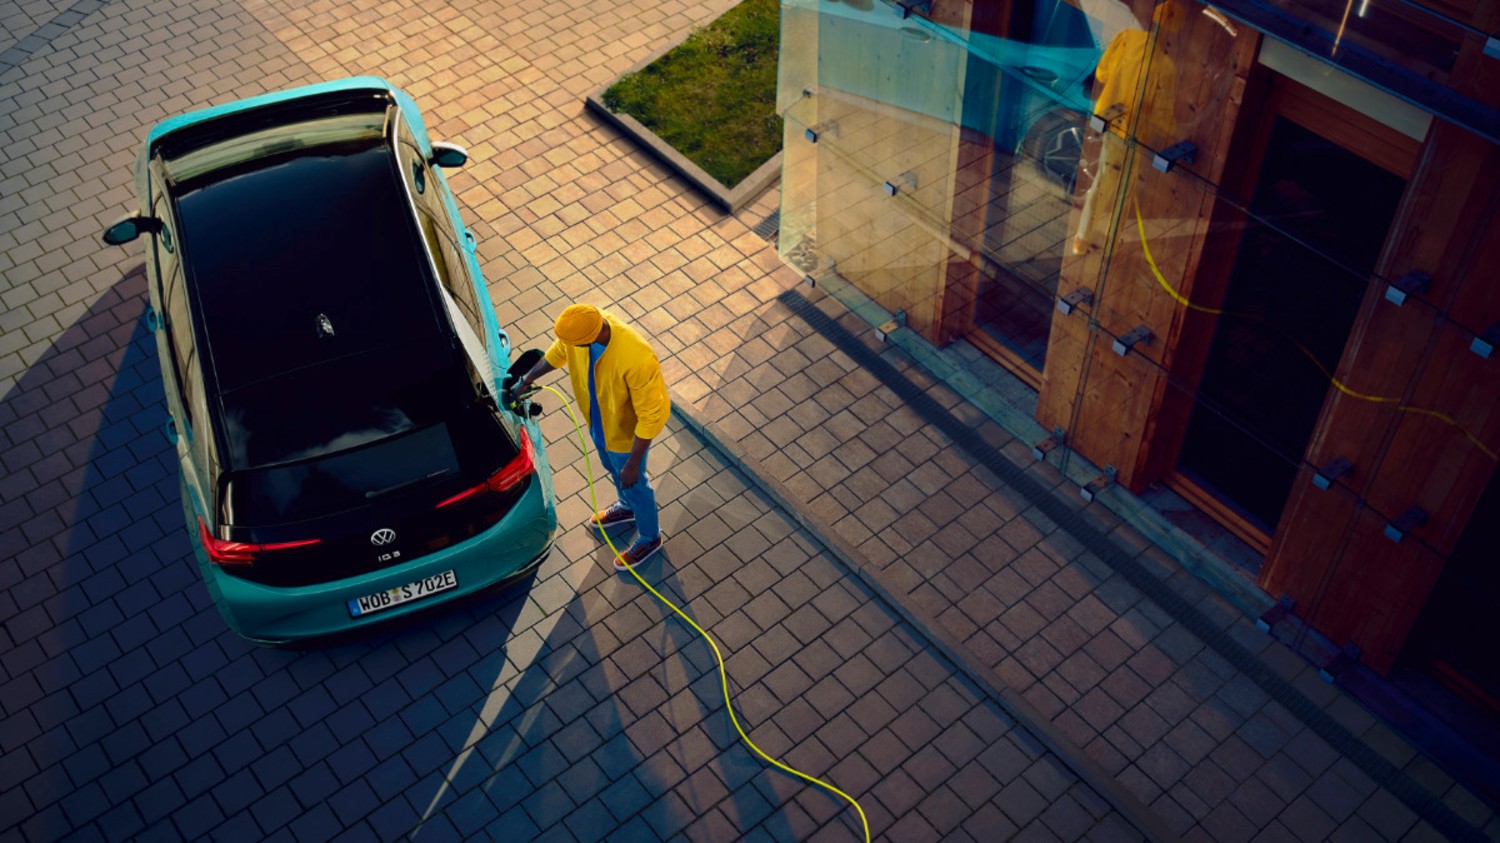 A concepção e produção de baterias é um dos aspectos em que Volkswagen promete focar a sua acção